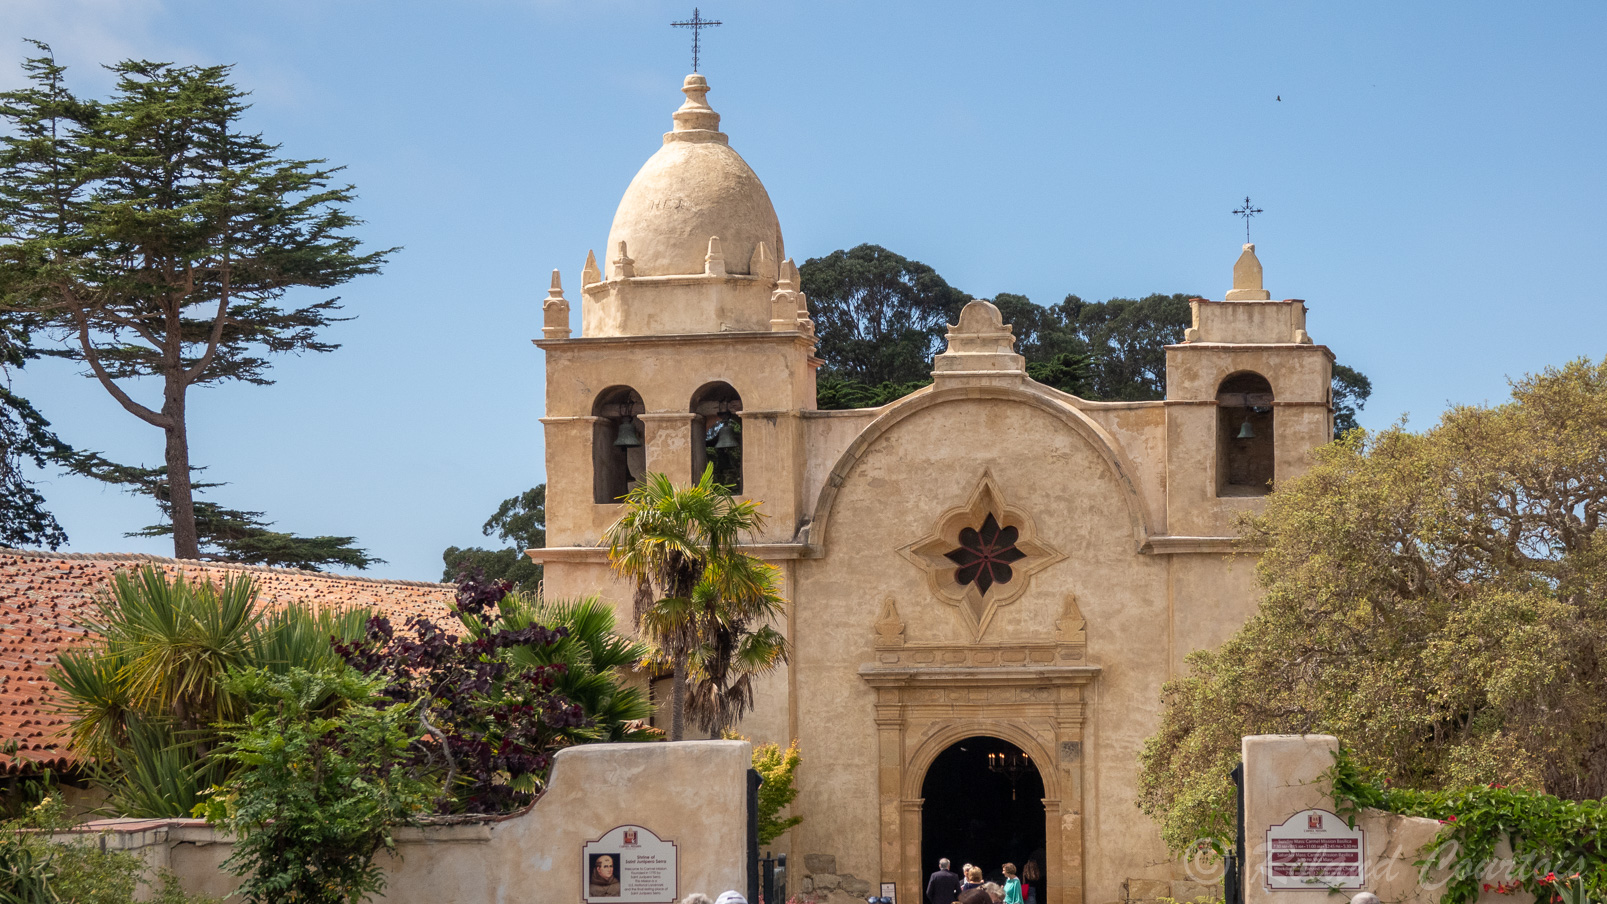 Elle est aussi une paroisse active du Diocèse de Monterey et accueille en ses murs une école privée et deux musées.